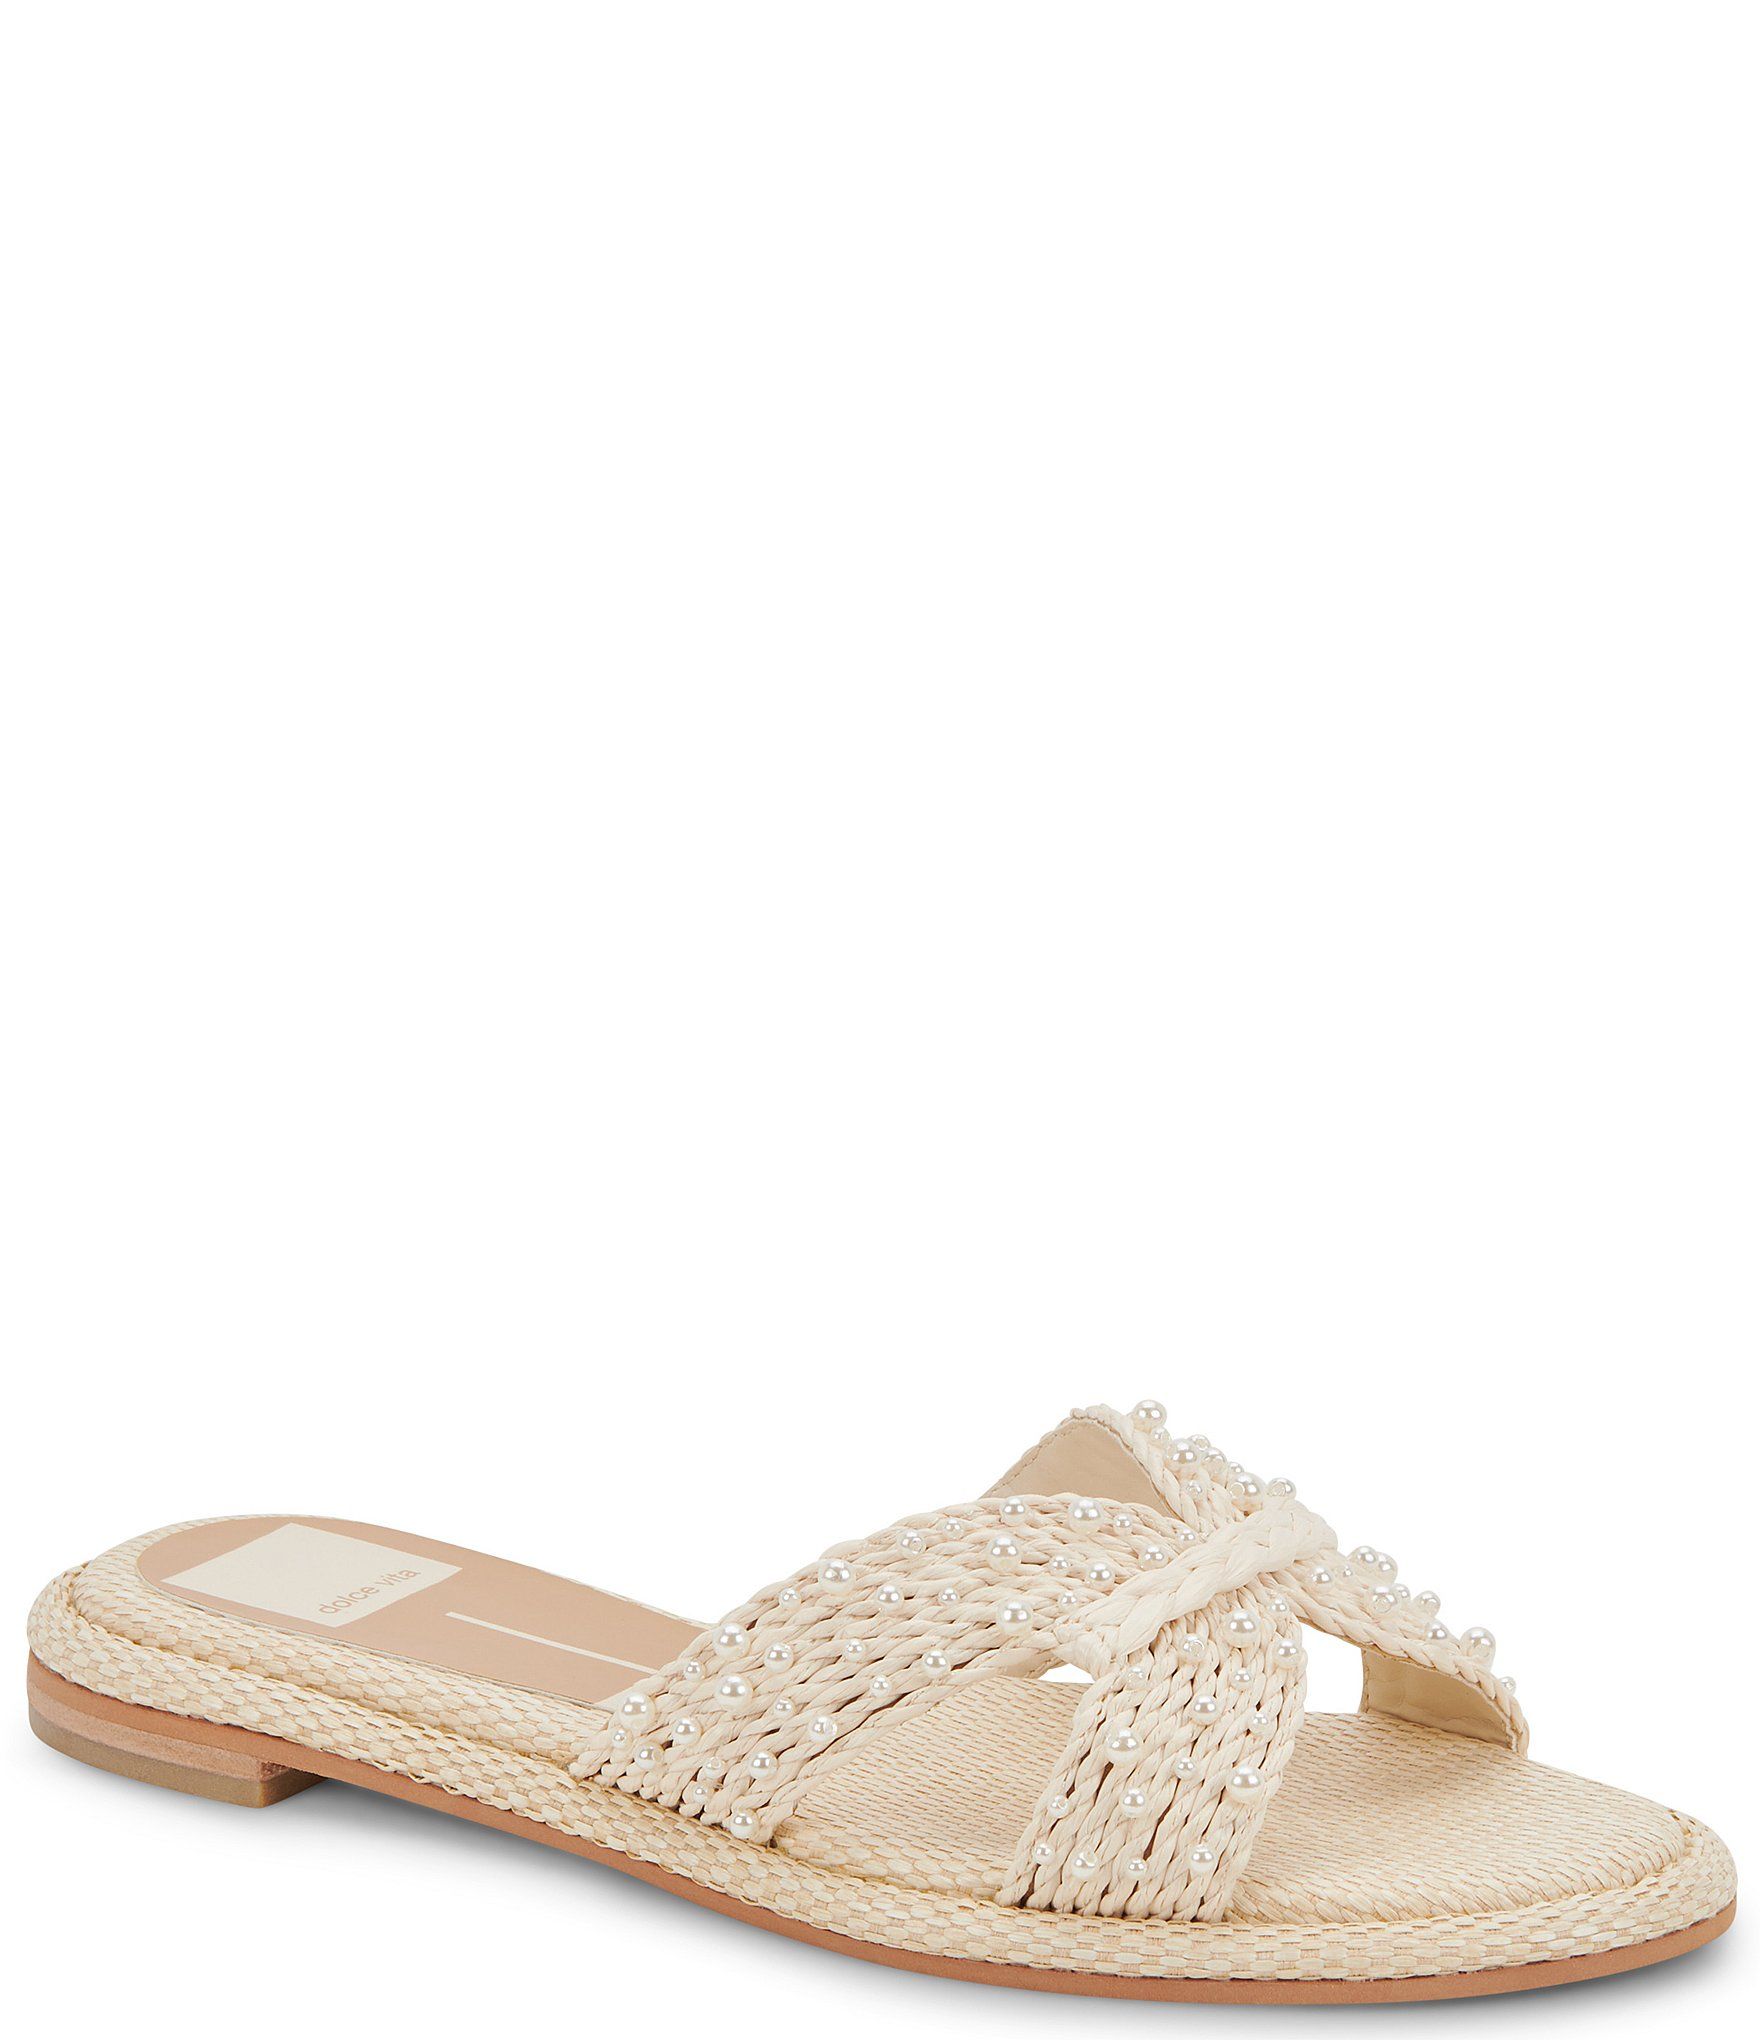 Atomic Pearl Raffia Flat Sandals | Dillard's